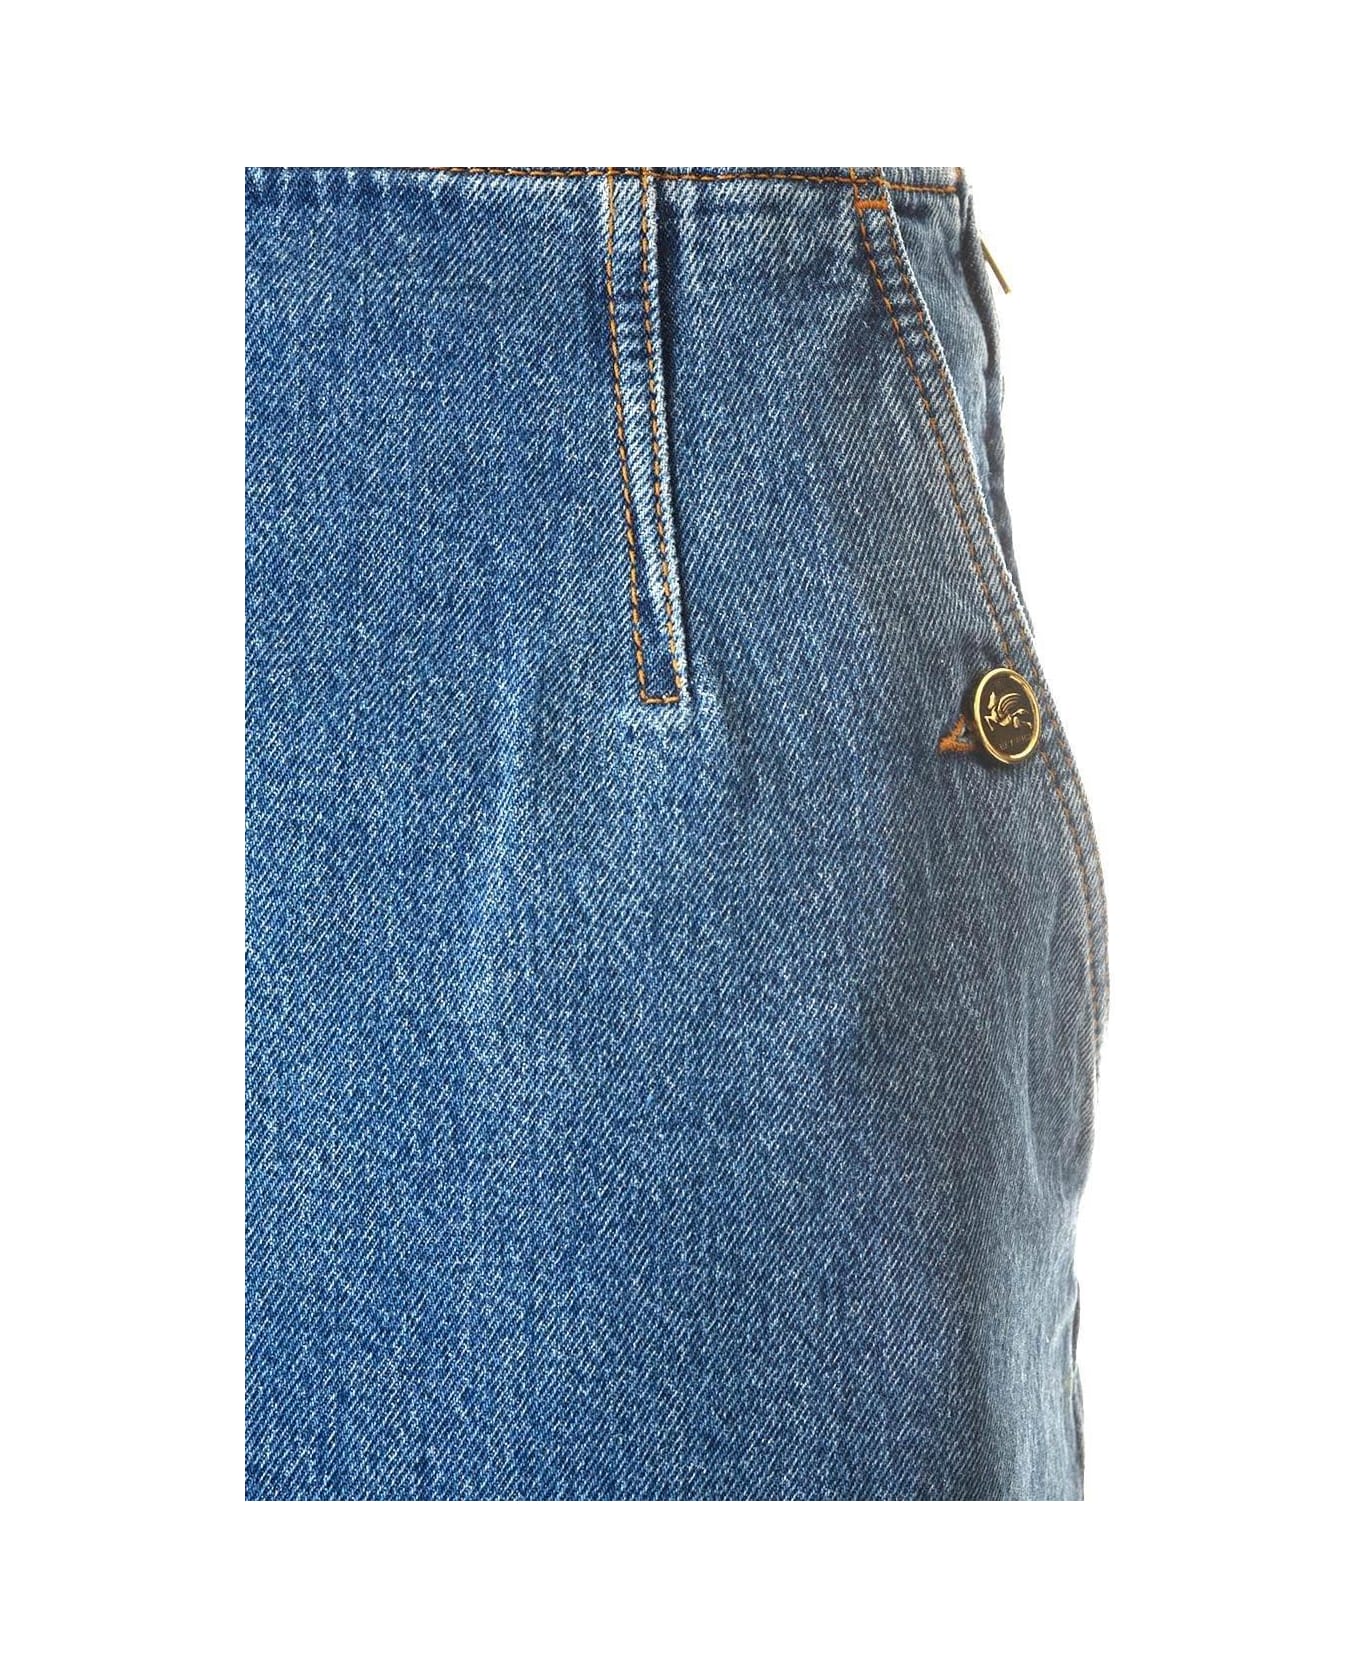 Etro Washed Denim Long Skirt - BLUE